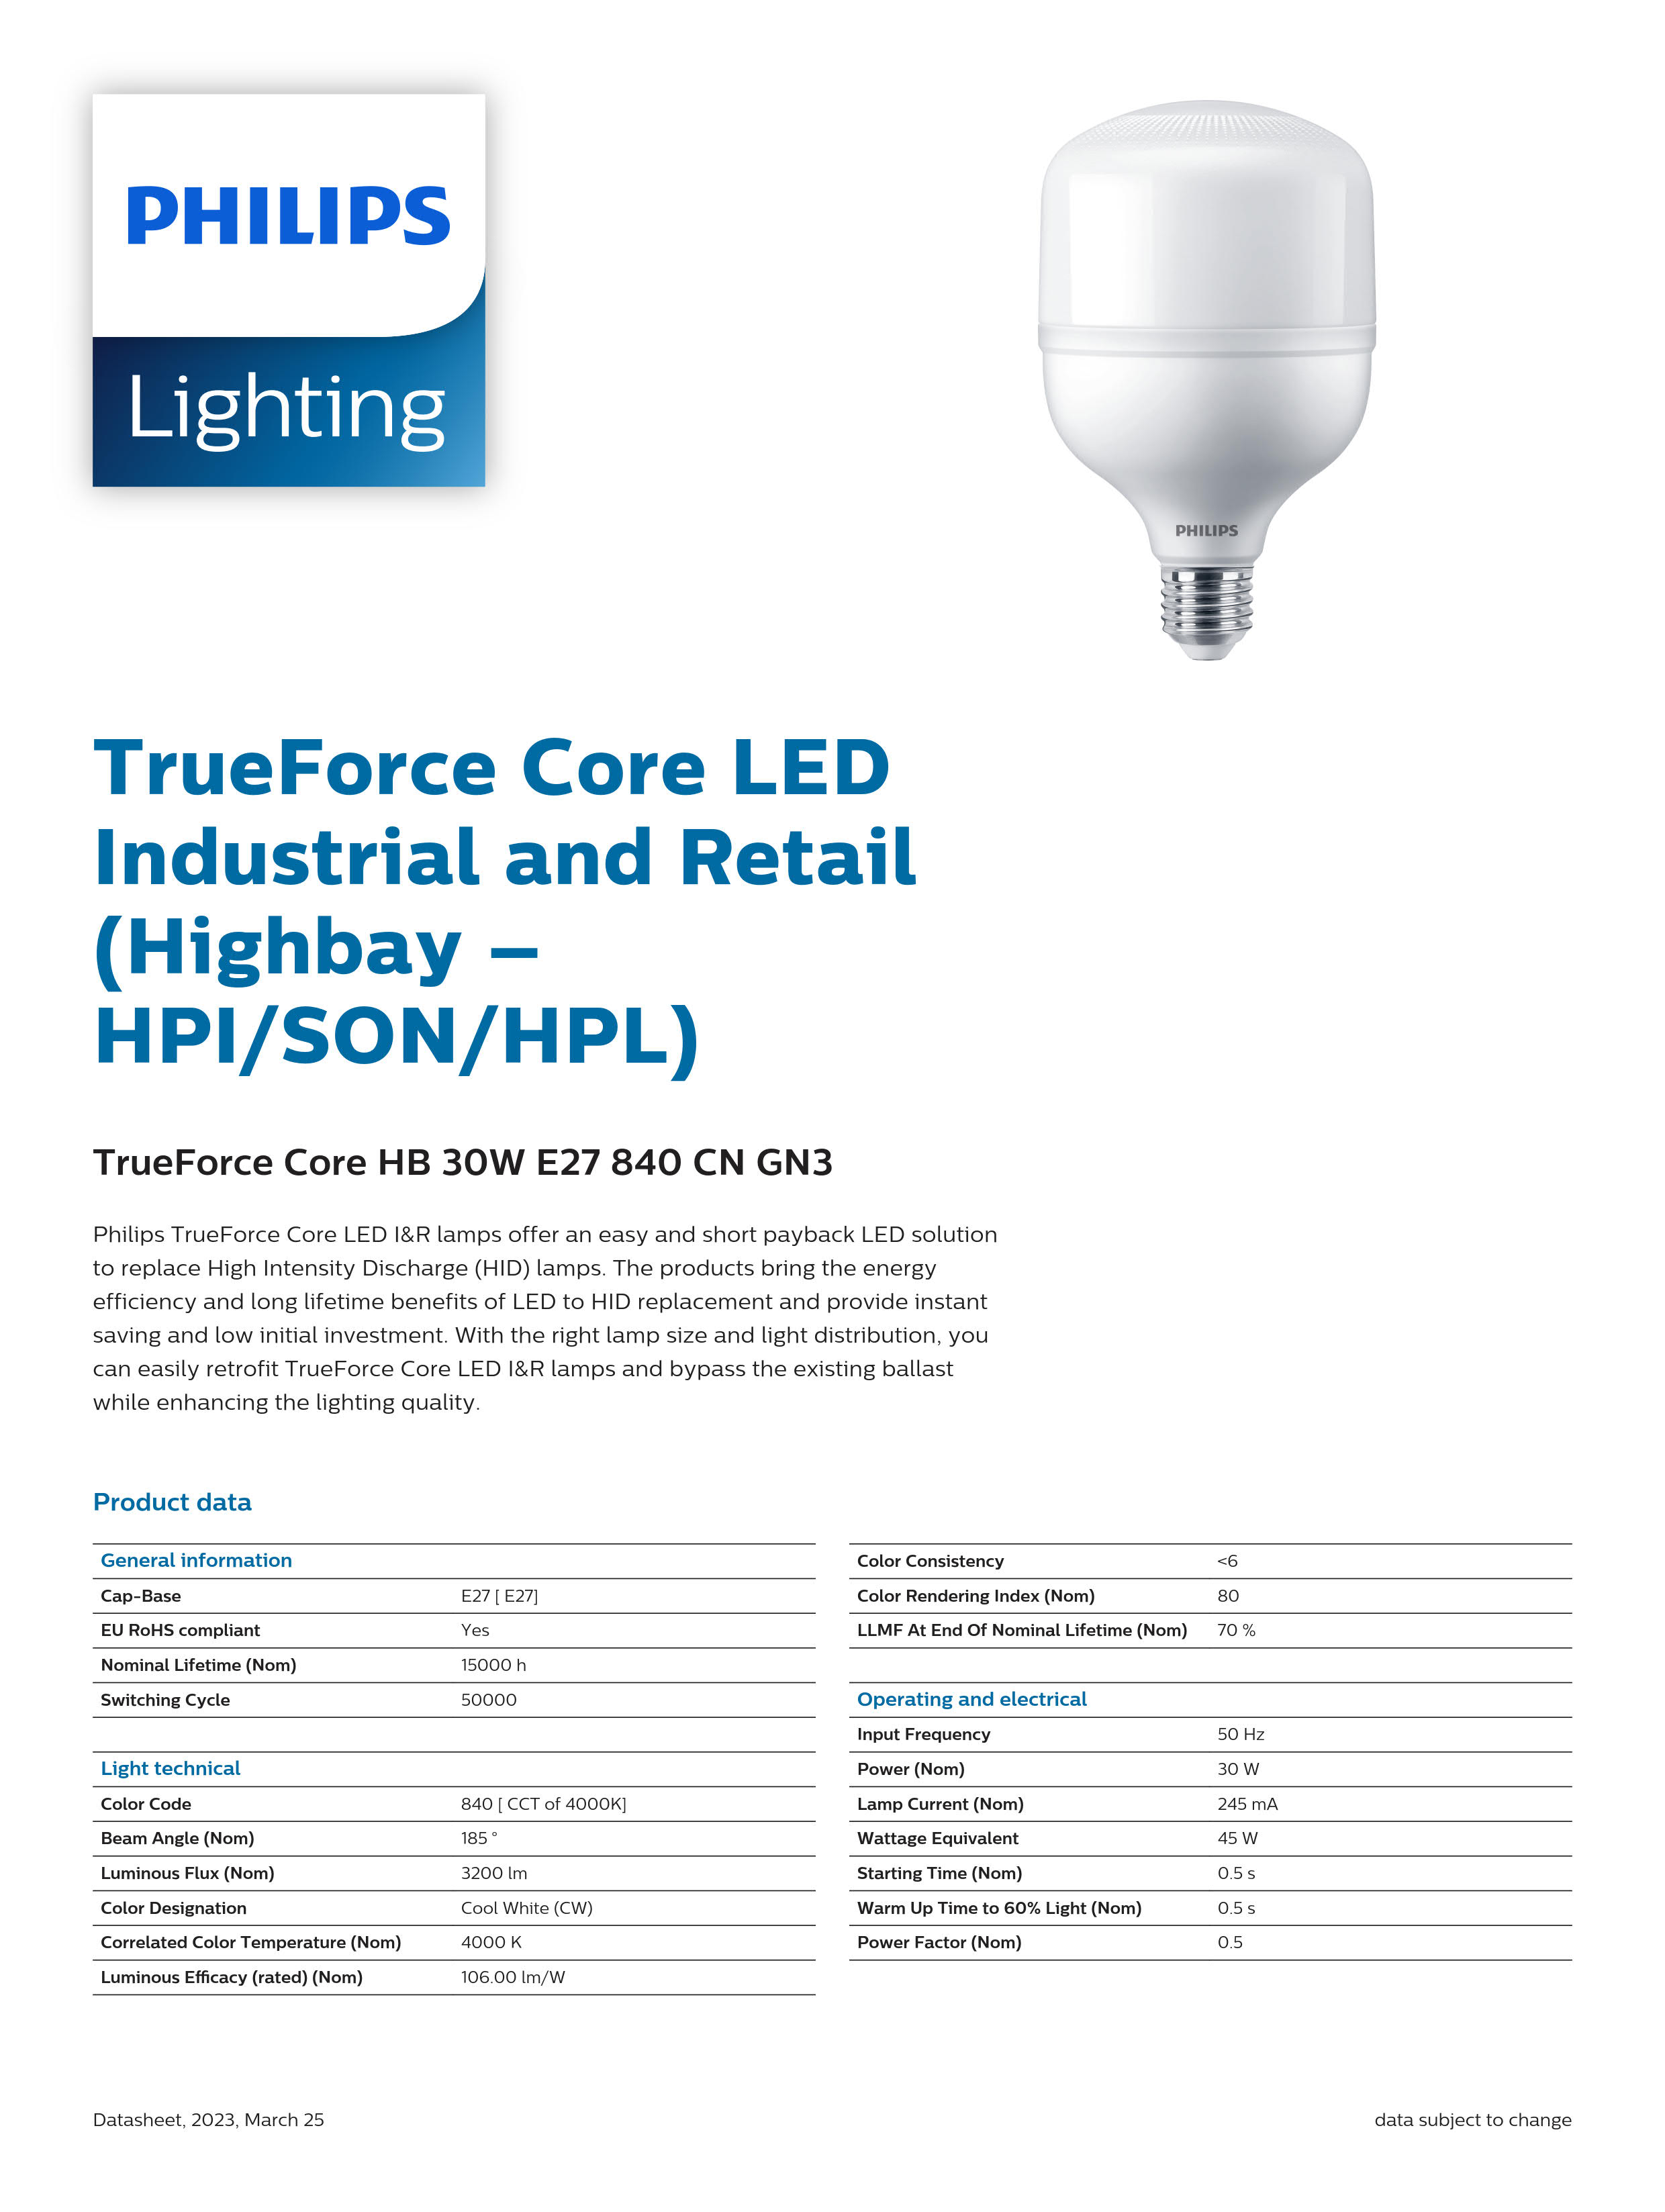 PHILIPS LED Bulb TrueForce Core HB 30W E27 840 CN GN3 929002410610